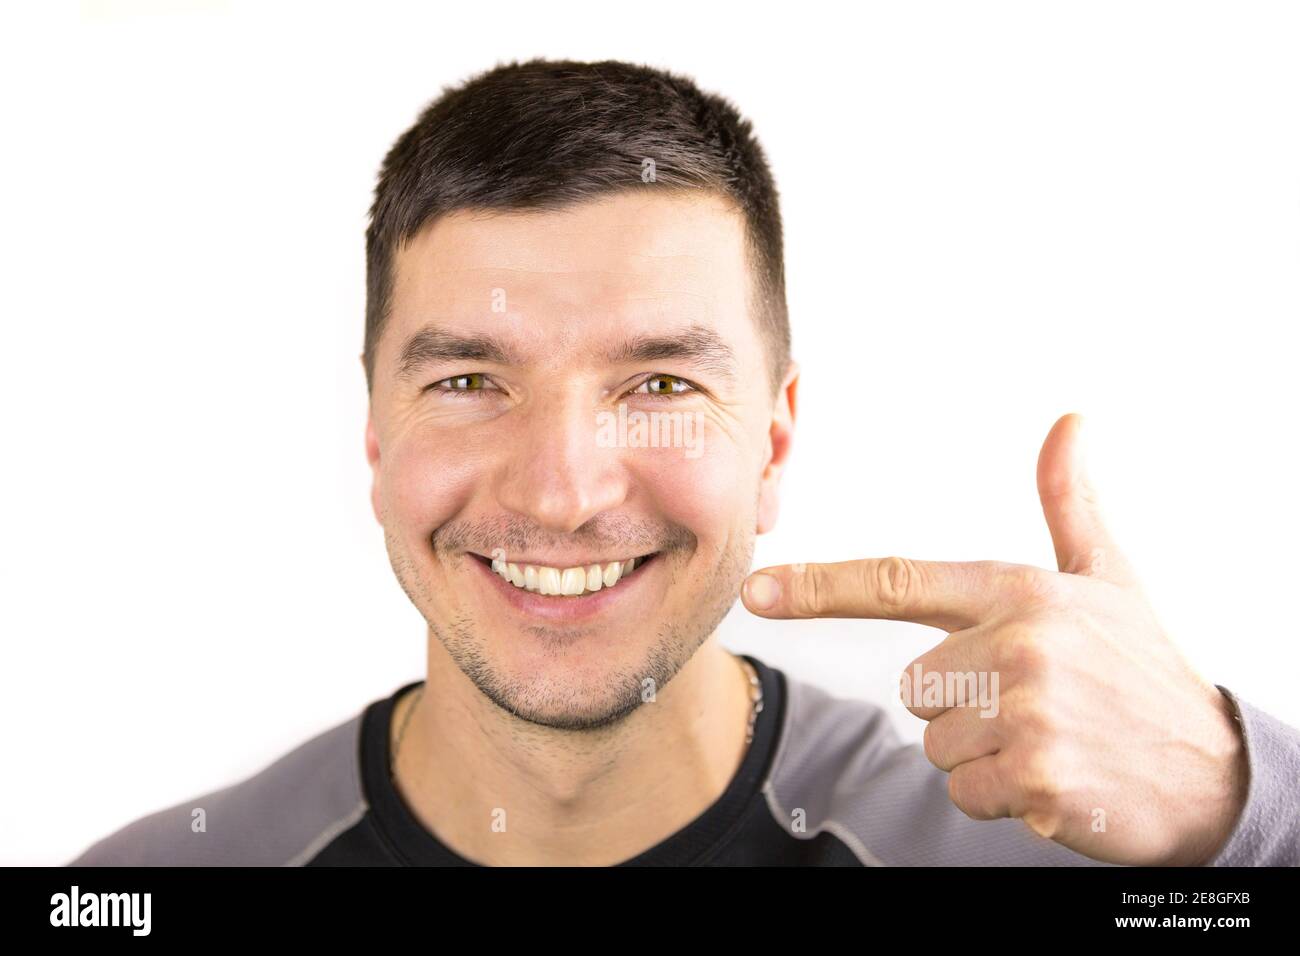 Schöne männliche schneeweiße Lächeln und Lippen des kaukasischen Aussehen Nahaufnahme. Zeigt den Finger auf die Zähne. Borsten von Stoppeln, Rasur, Brutalität. Zahnärztliche PR Stockfoto